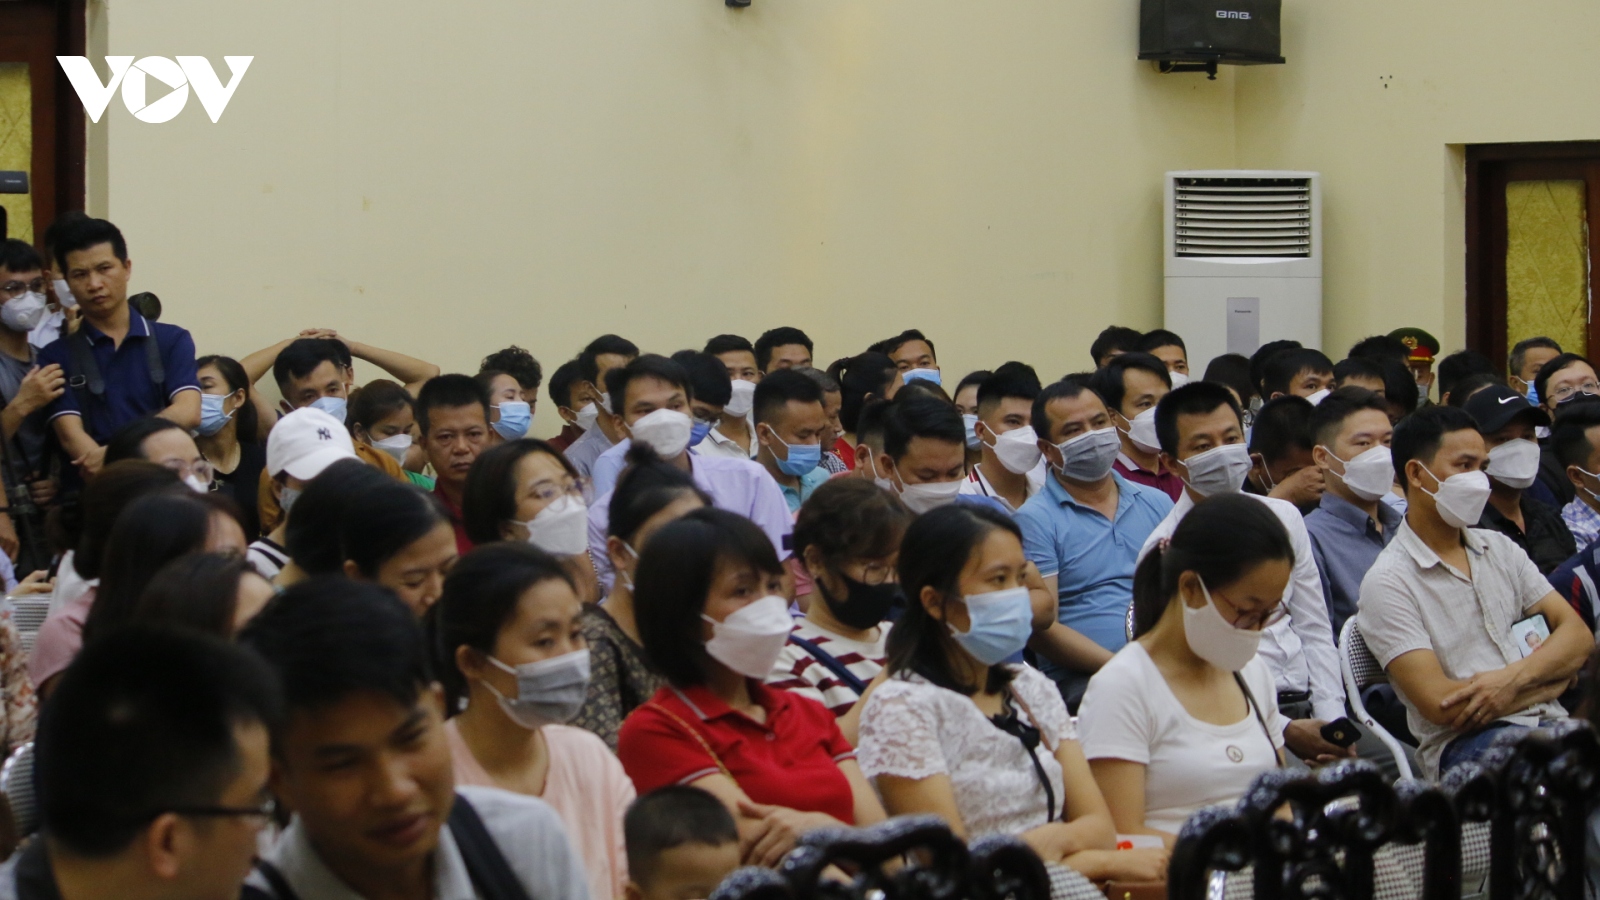 Bốc thăm vào trường mầm non công lập tại Hà Nội: Phụ huynh bức xúc